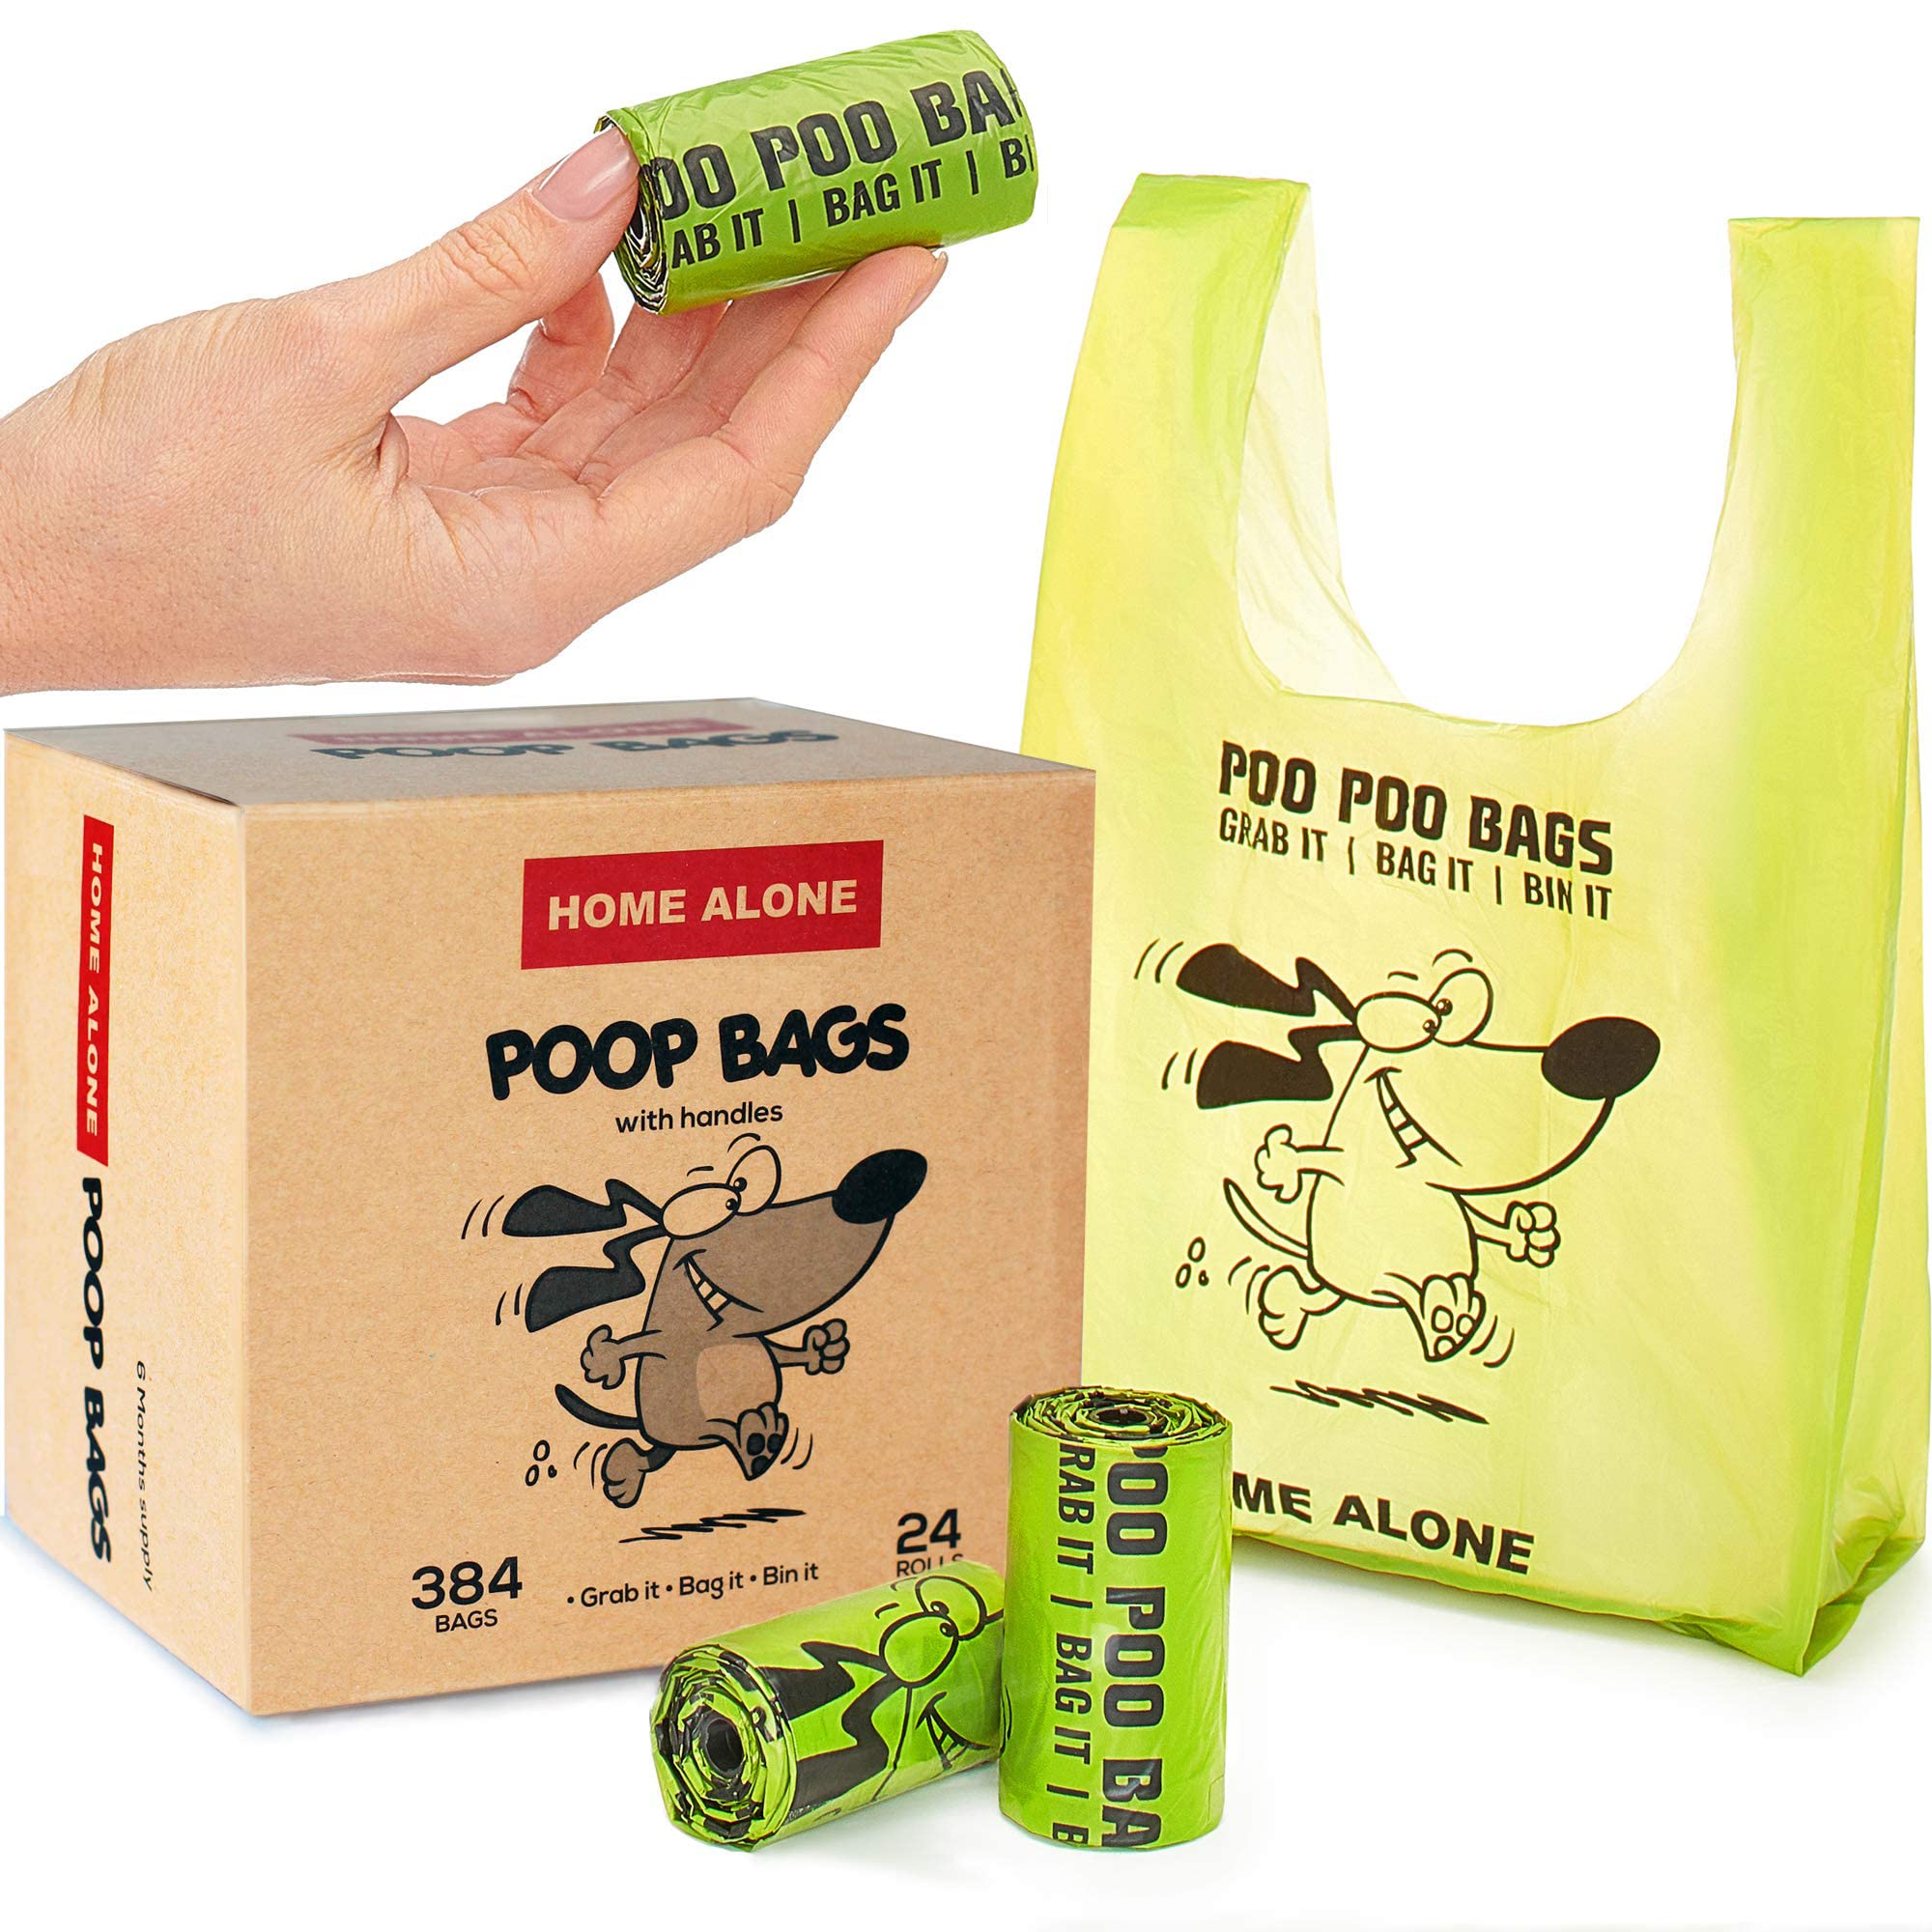 degradable poop bags